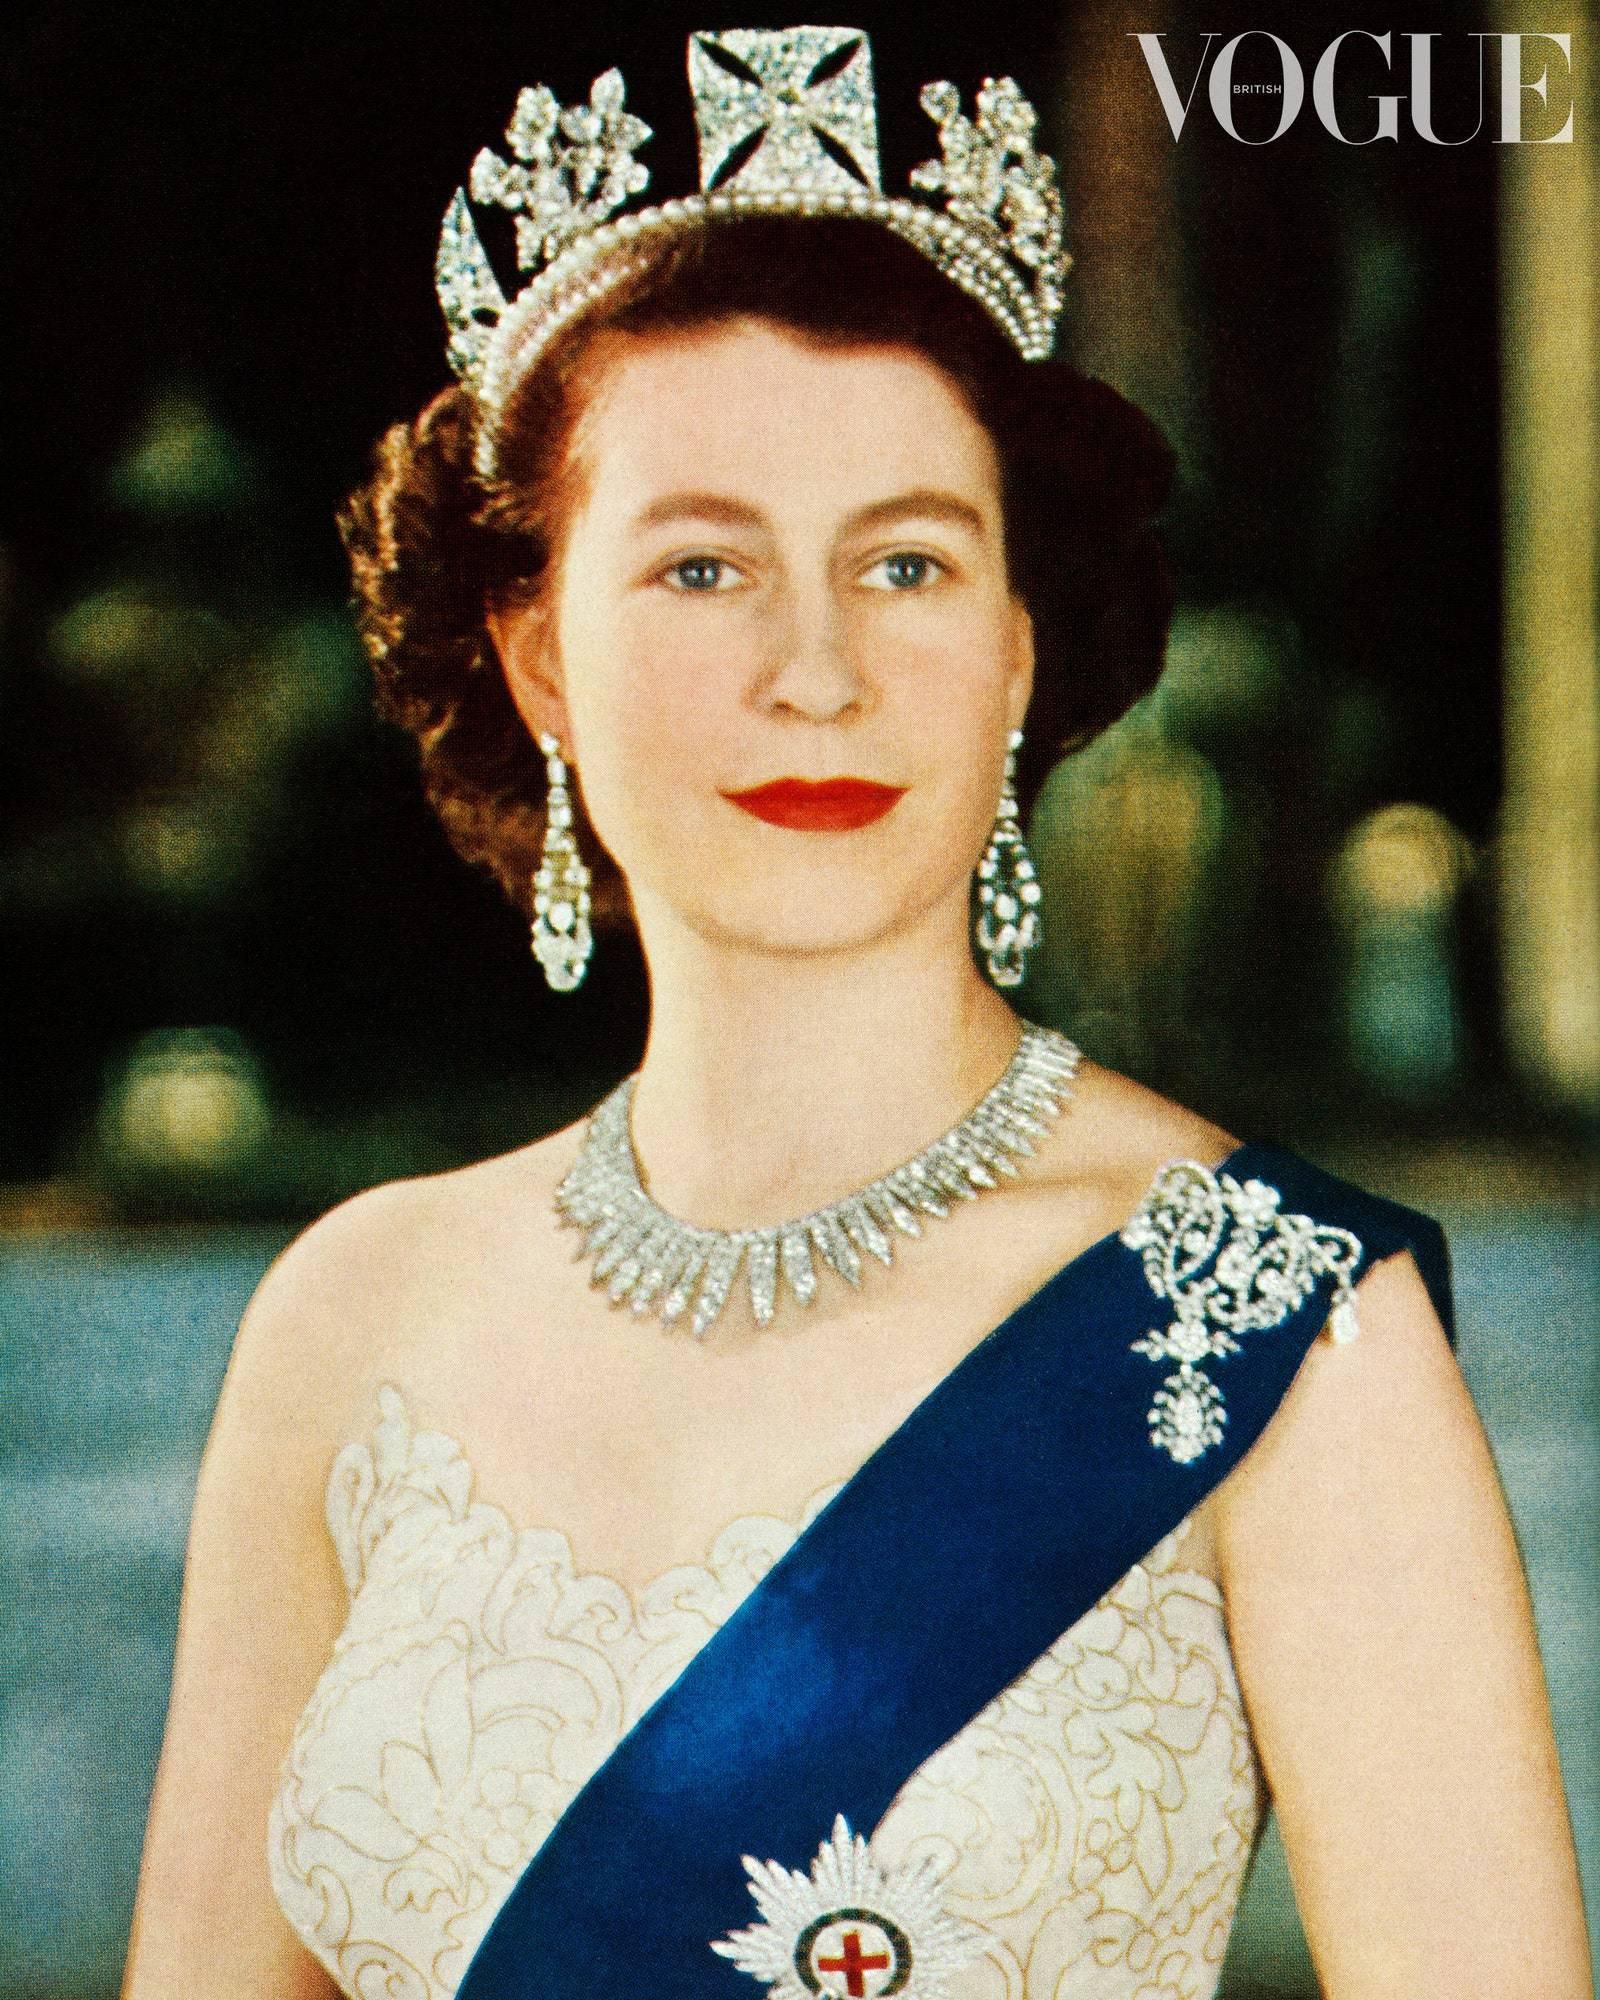 1953年,25岁的伊丽莎白二世接过象征权力的权杖,戴上国王象征的王冠